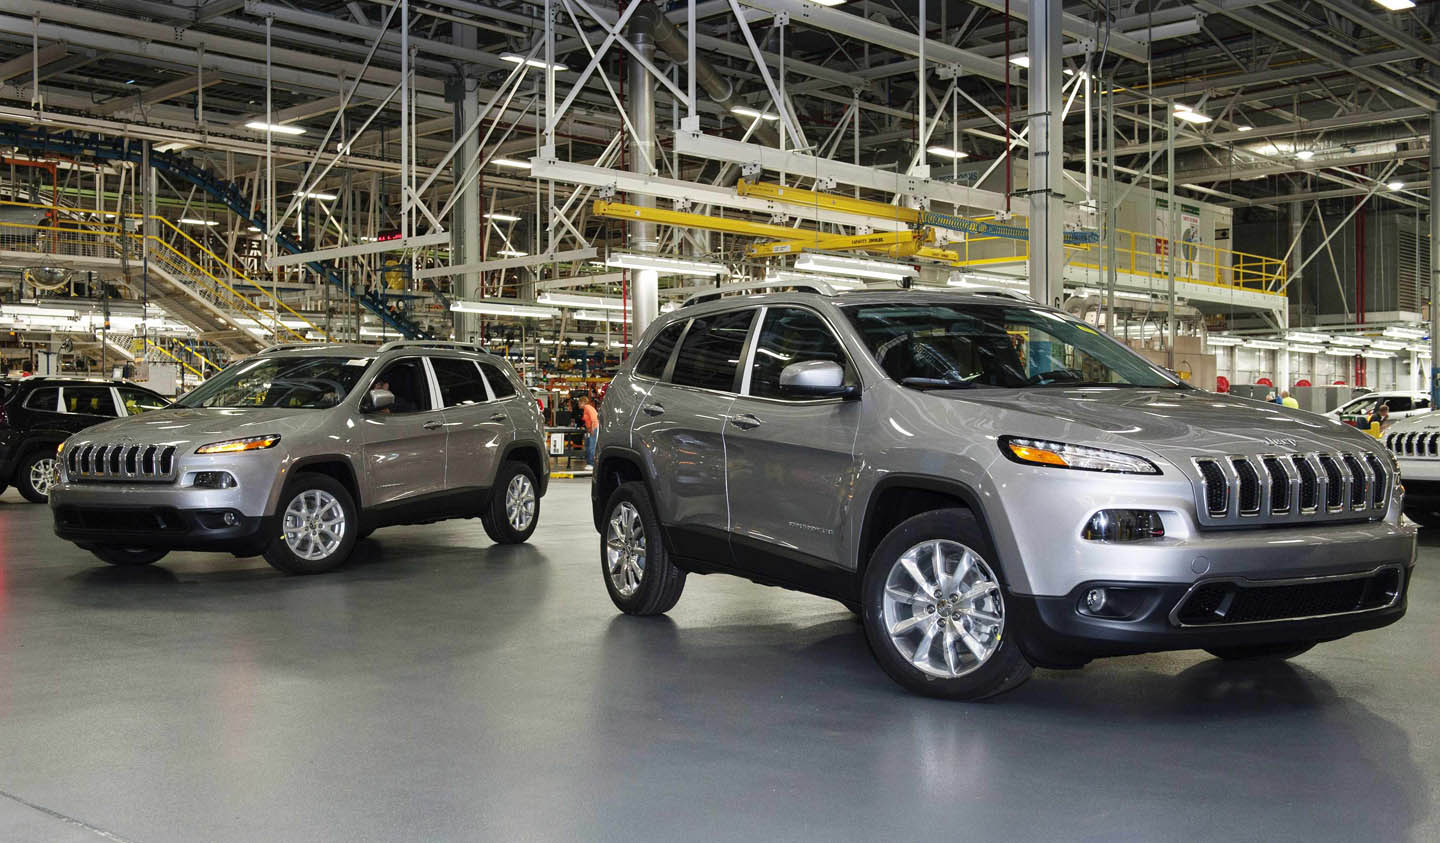 Chrysler llama a revisión a más de 180 mil vehículos por un problema con los airbags